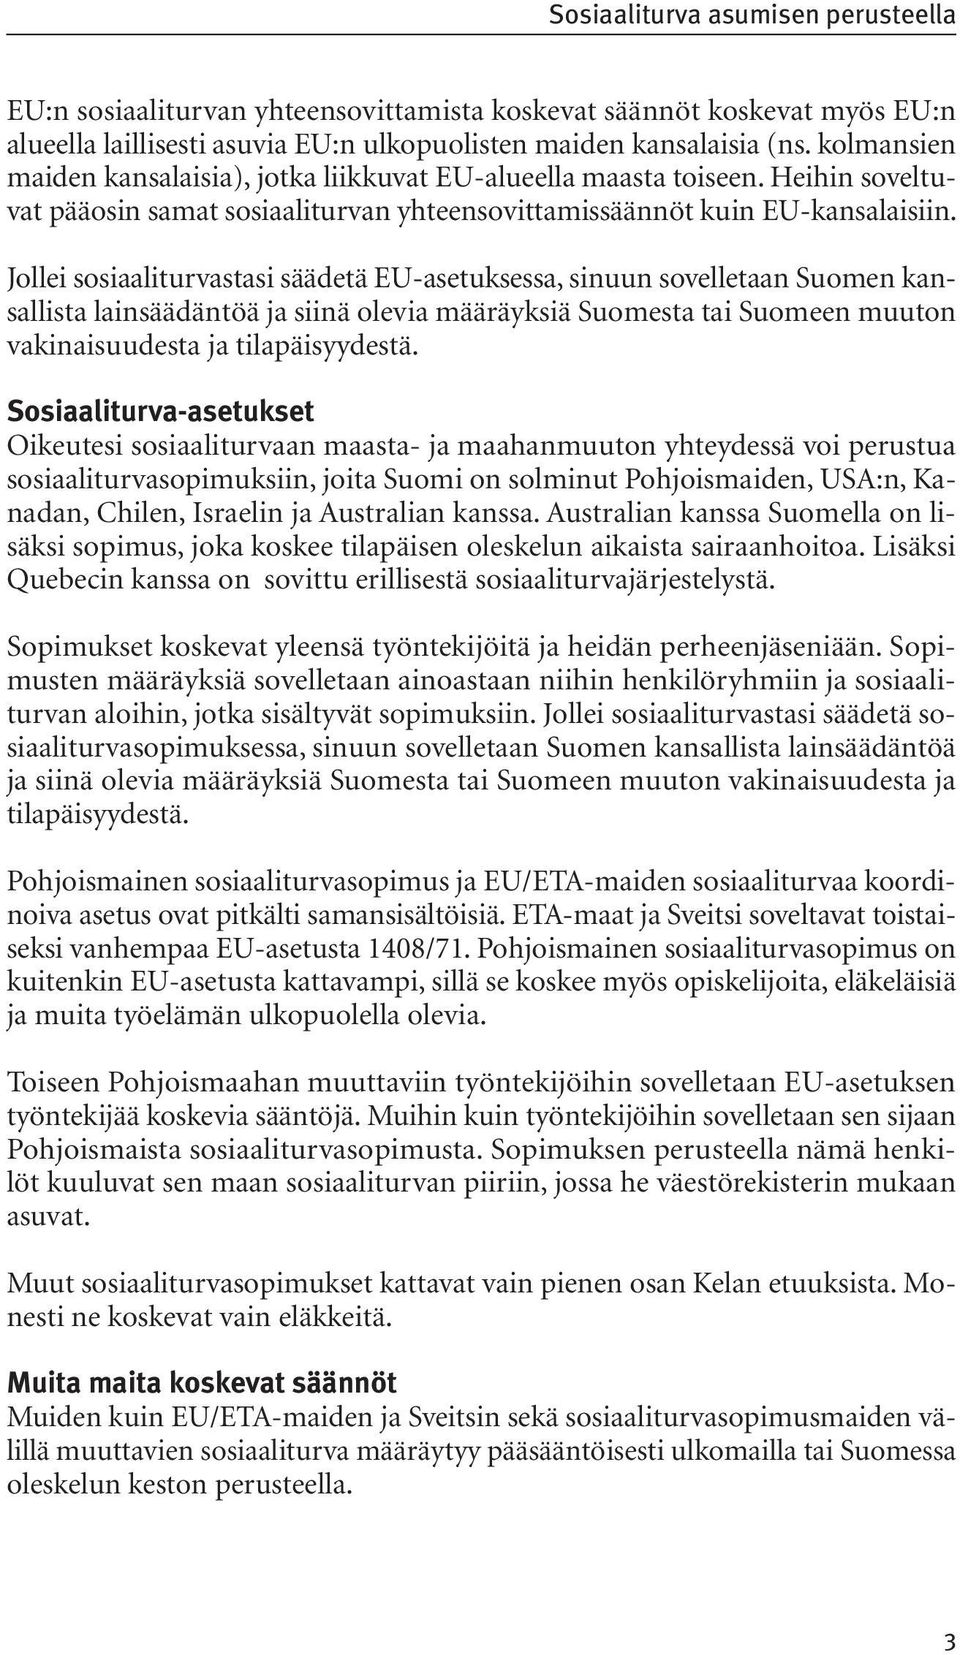 Jollei sosiaaliturvastasi säädetä EU-asetuksessa, sinuun sovelletaan Suomen kansallista lainsäädäntöä ja siinä olevia määräyksiä Suomesta tai Suomeen muuton vakinaisuudesta ja tilapäisyydestä.